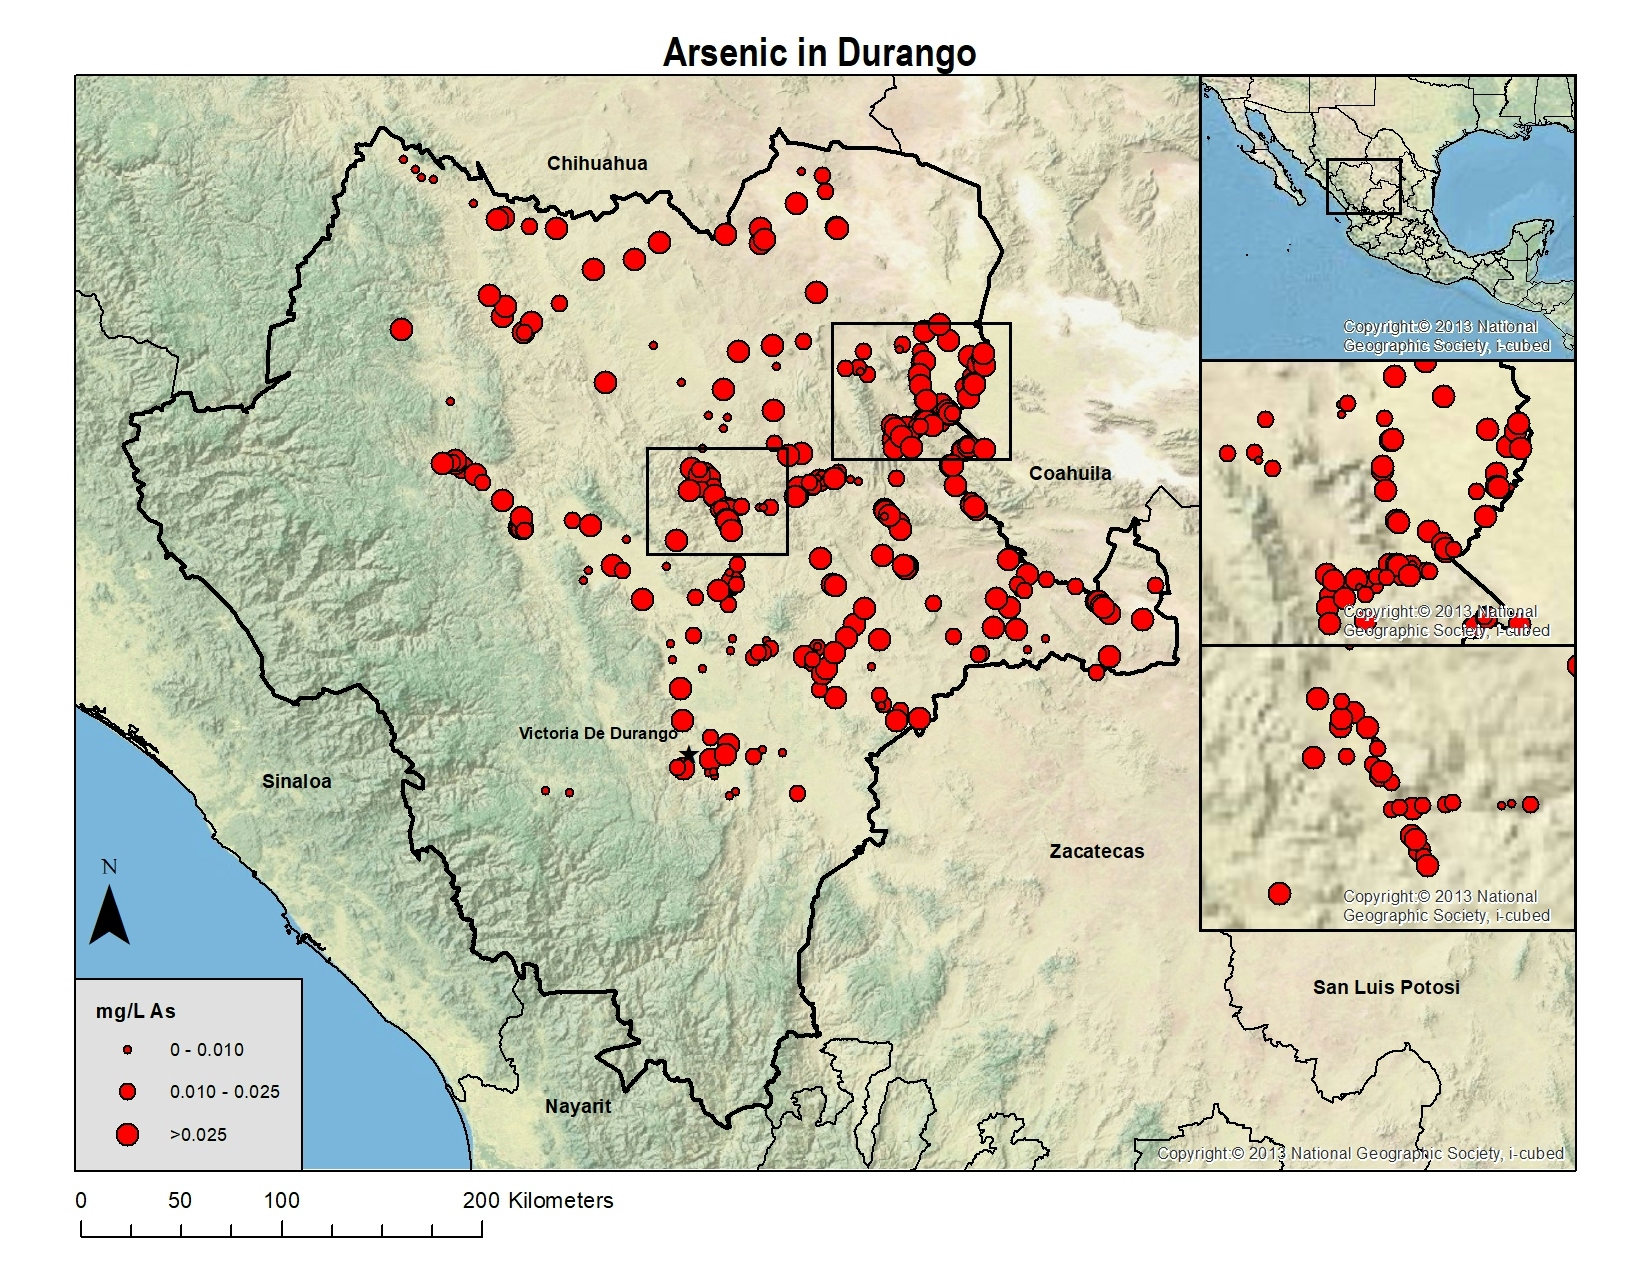 Arsenic in Durango, Mexico